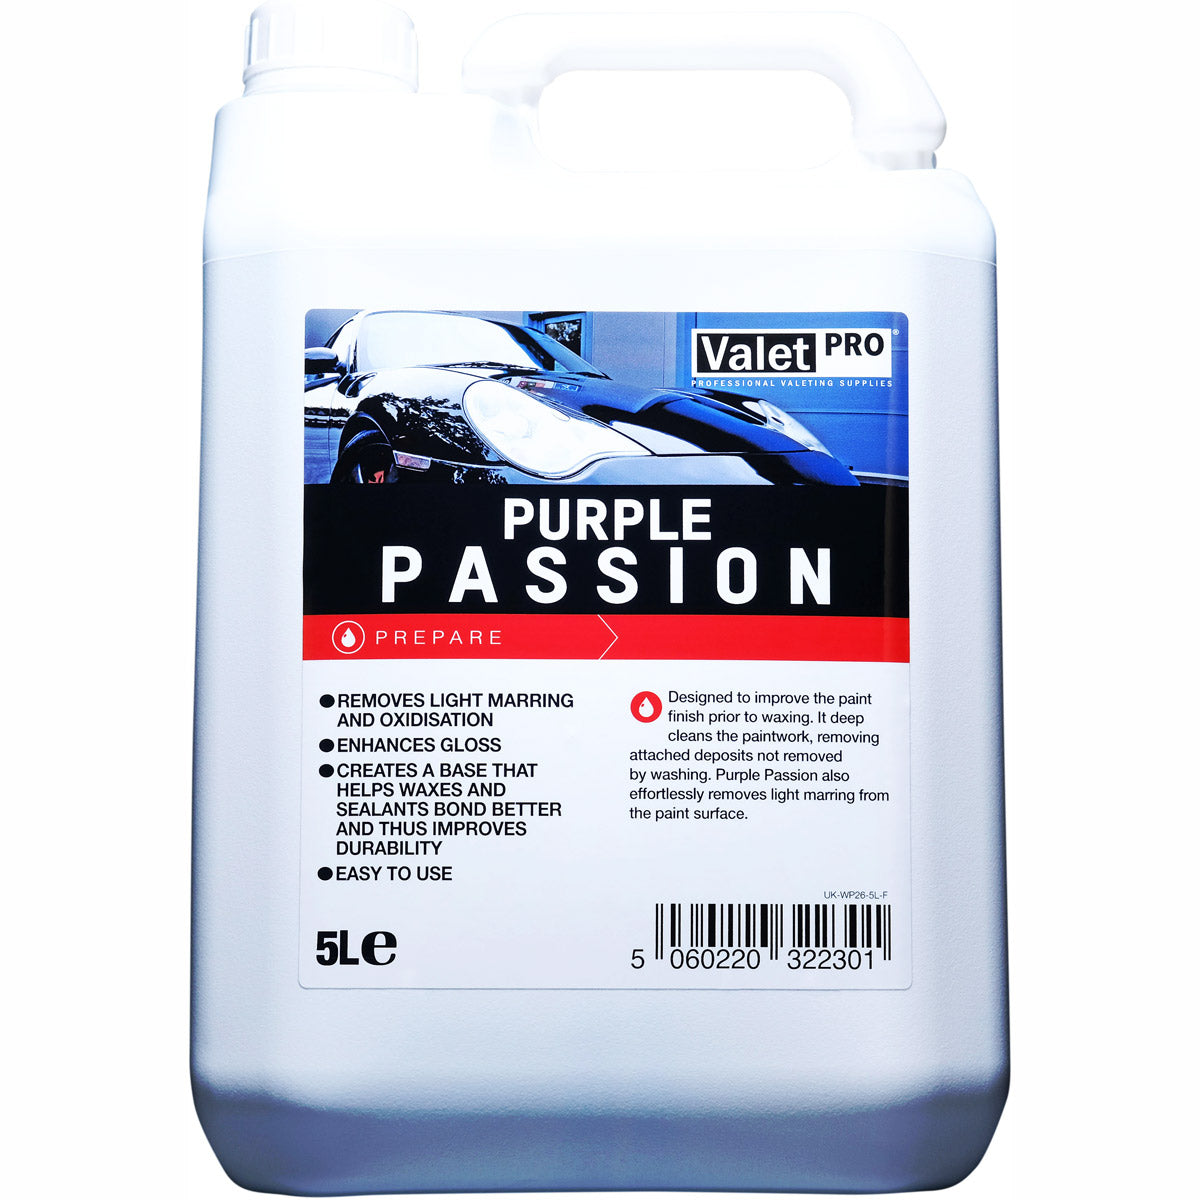 ValetPRO Purple Passion - Fine Paint Cleanser - 5L bottle